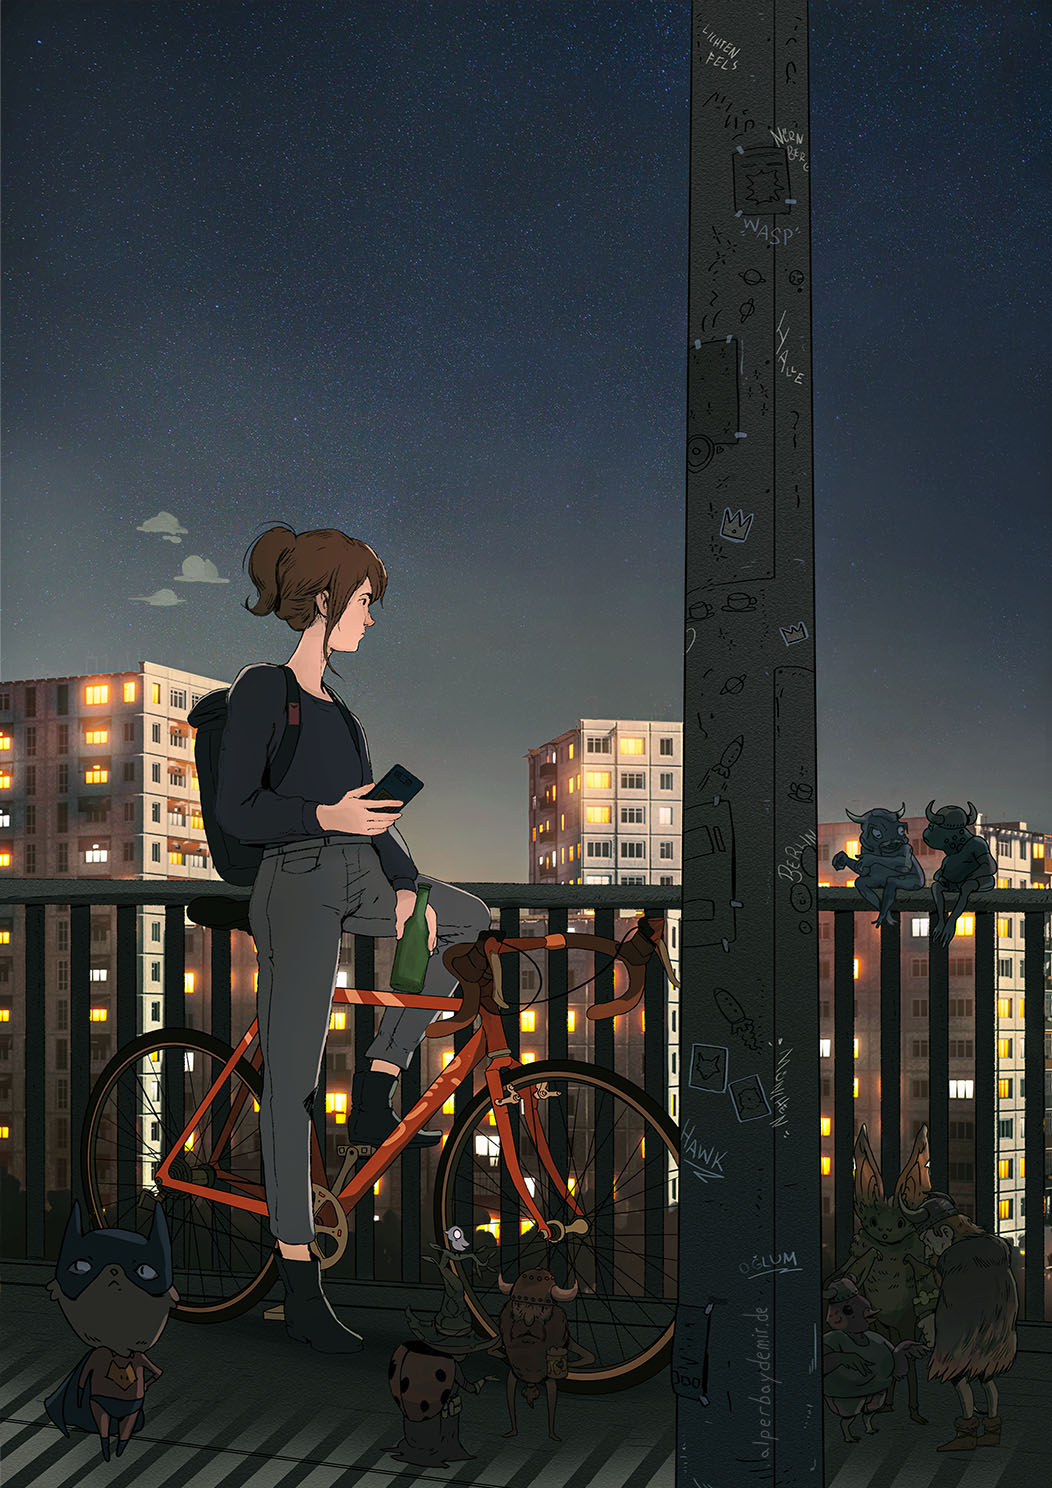 Eine junge Frau blickt gedankenverloren auf einer Brücke bei Nacht, während die Lichter der Stadt um sie herum aufleuchten und geheimnisvolle Wesen im Dunkeln ihrem Treiben nachgehen.